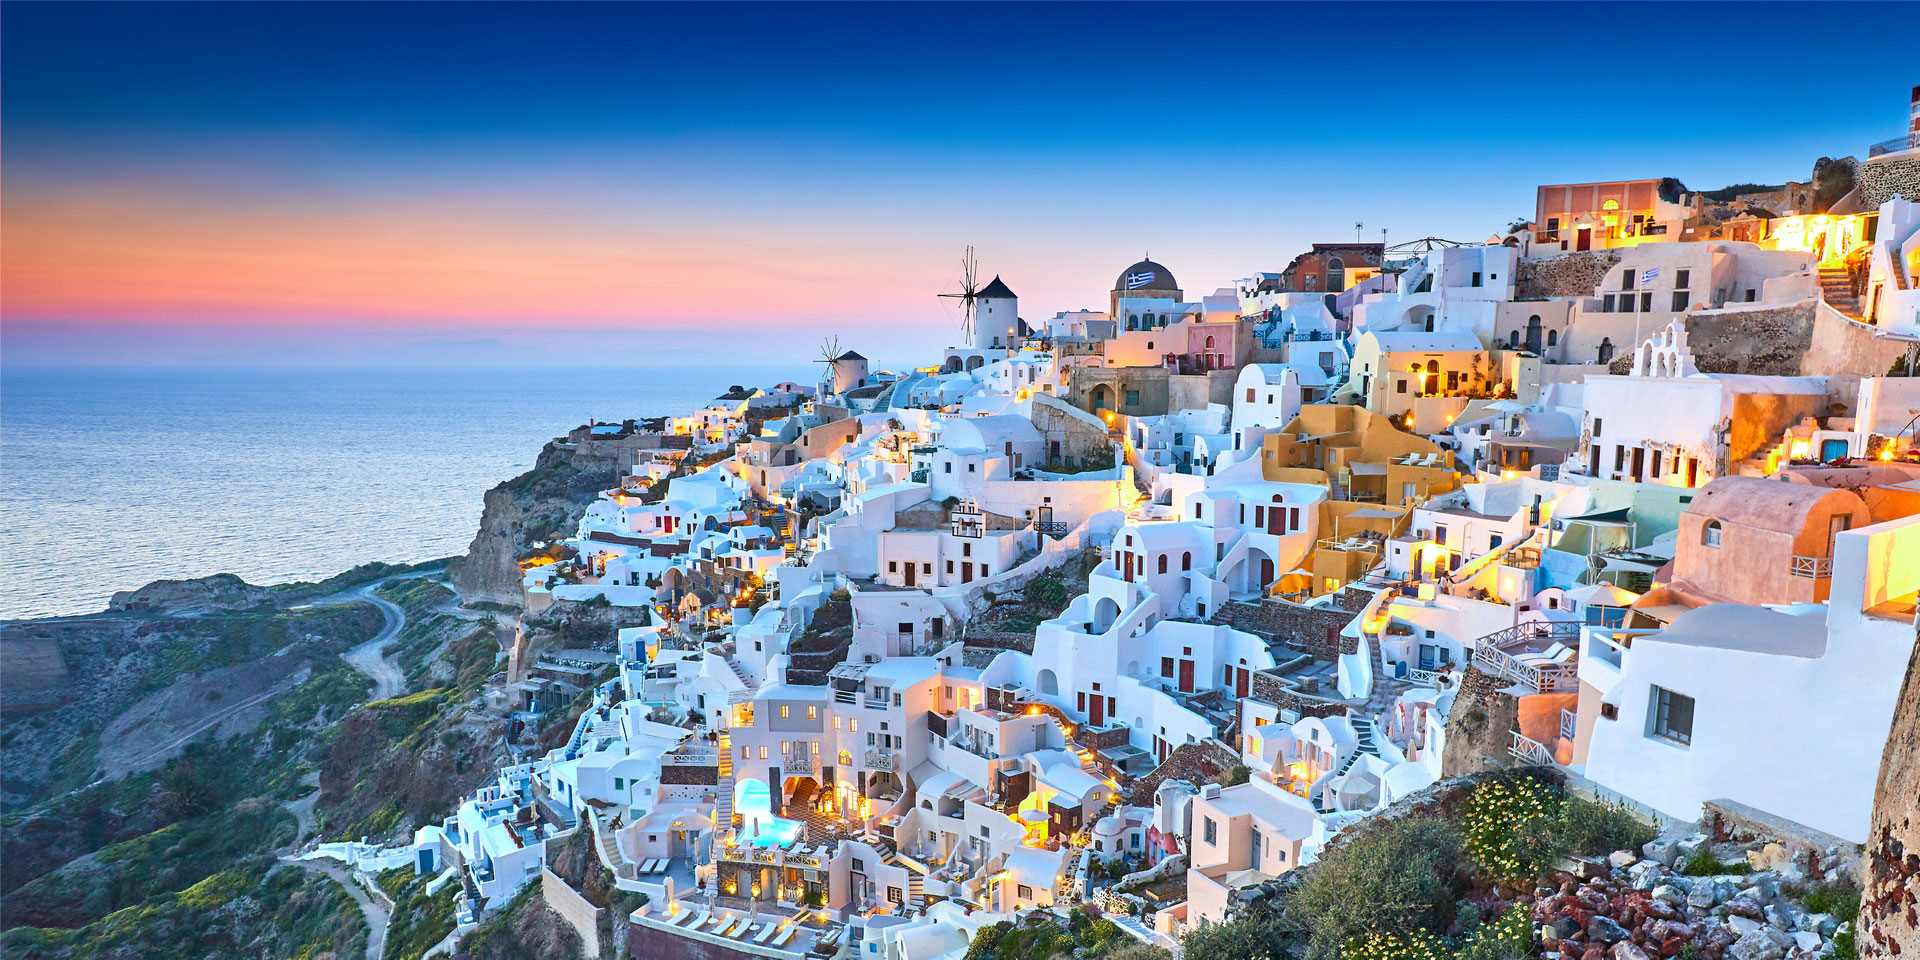 Hy Lạp là một trong những điểm du lịch nổi tiếng nhất trên thế giới